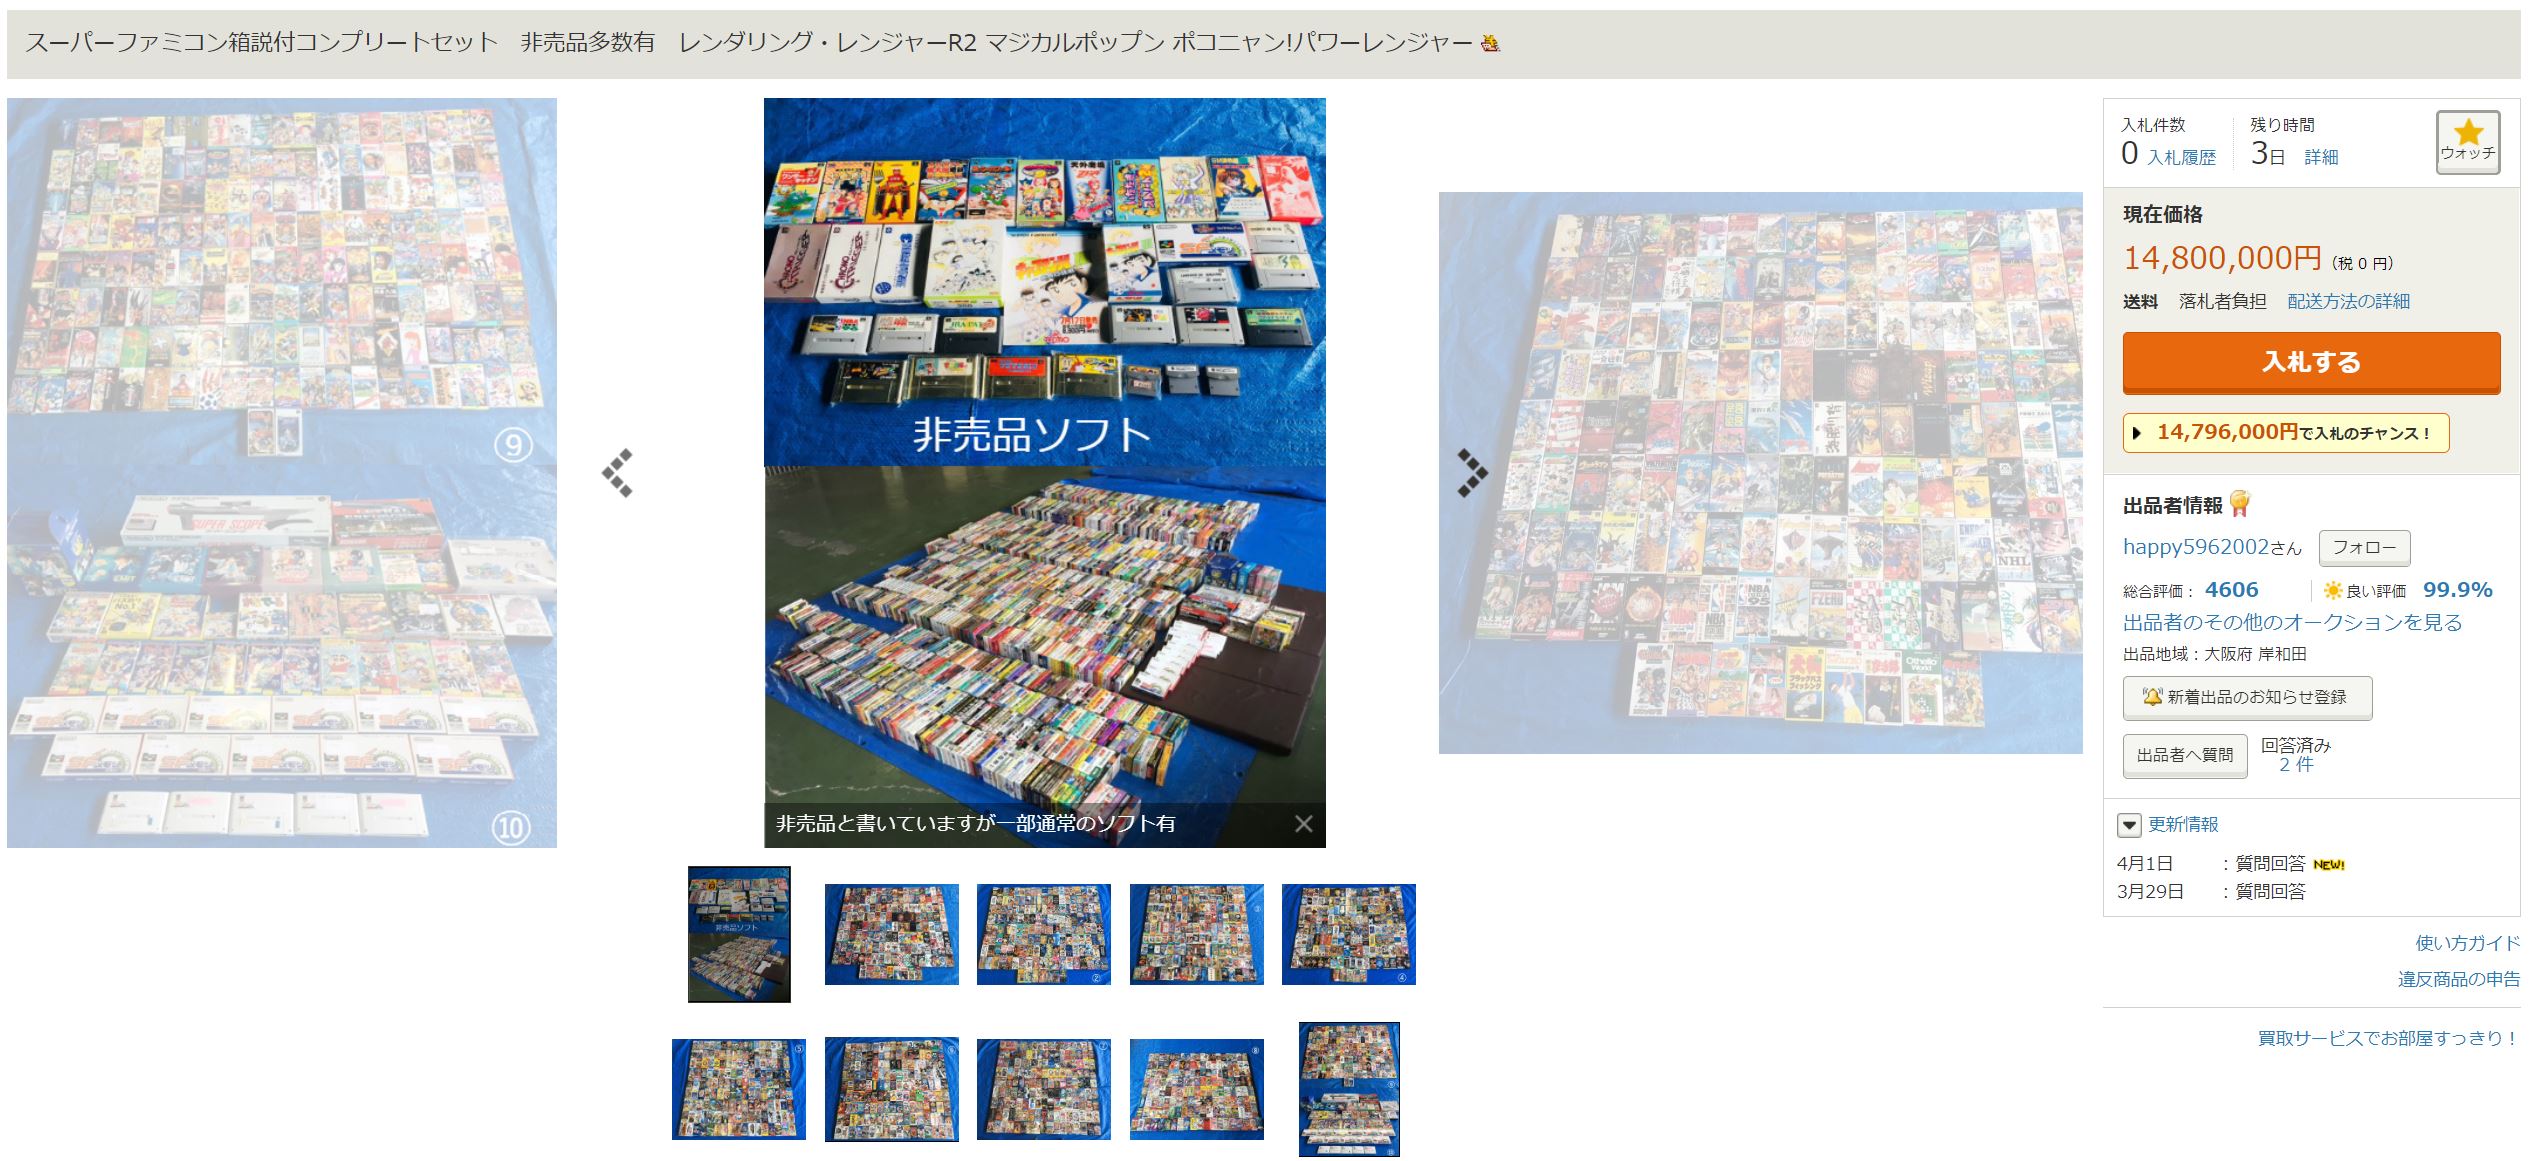 1000本以上のスーパーファミコン用ゲーム、ヤフオクで「1480万円」から